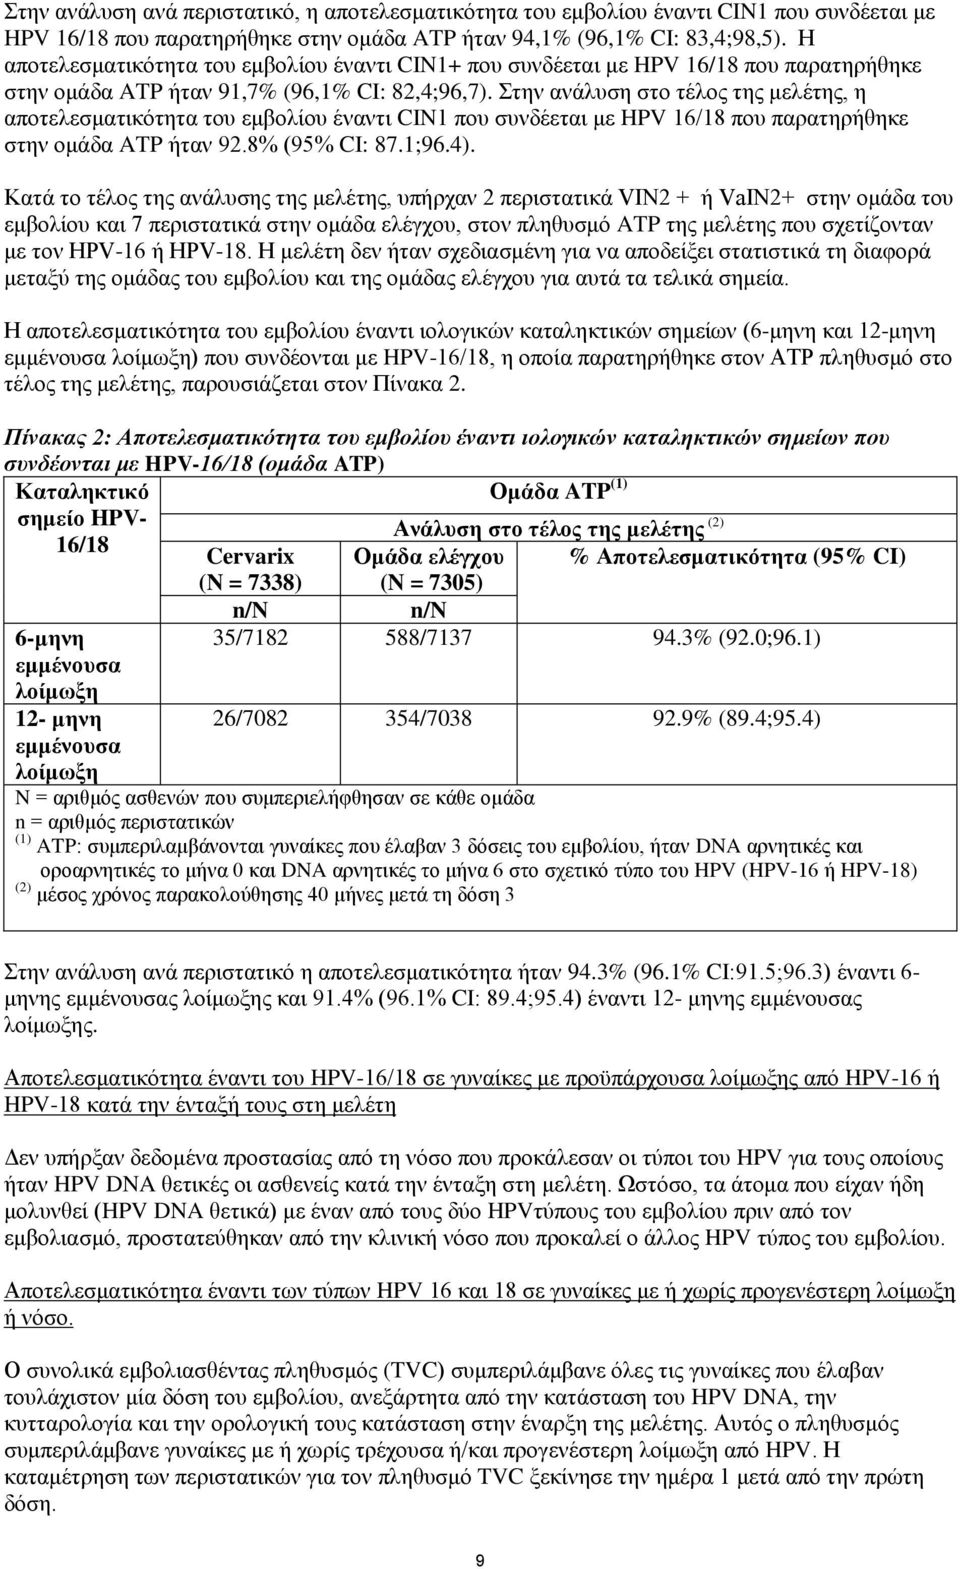 Στην ανάλυση στο τέλος της μελέτης, η αποτελεσματικότητα του εμβολίου έναντι CIN1 που συνδέεται με HPV 16/18 που παρατηρήθηκε στην ομάδα ATP ήταν 92.8% (95% CI: 87.1;96.4).